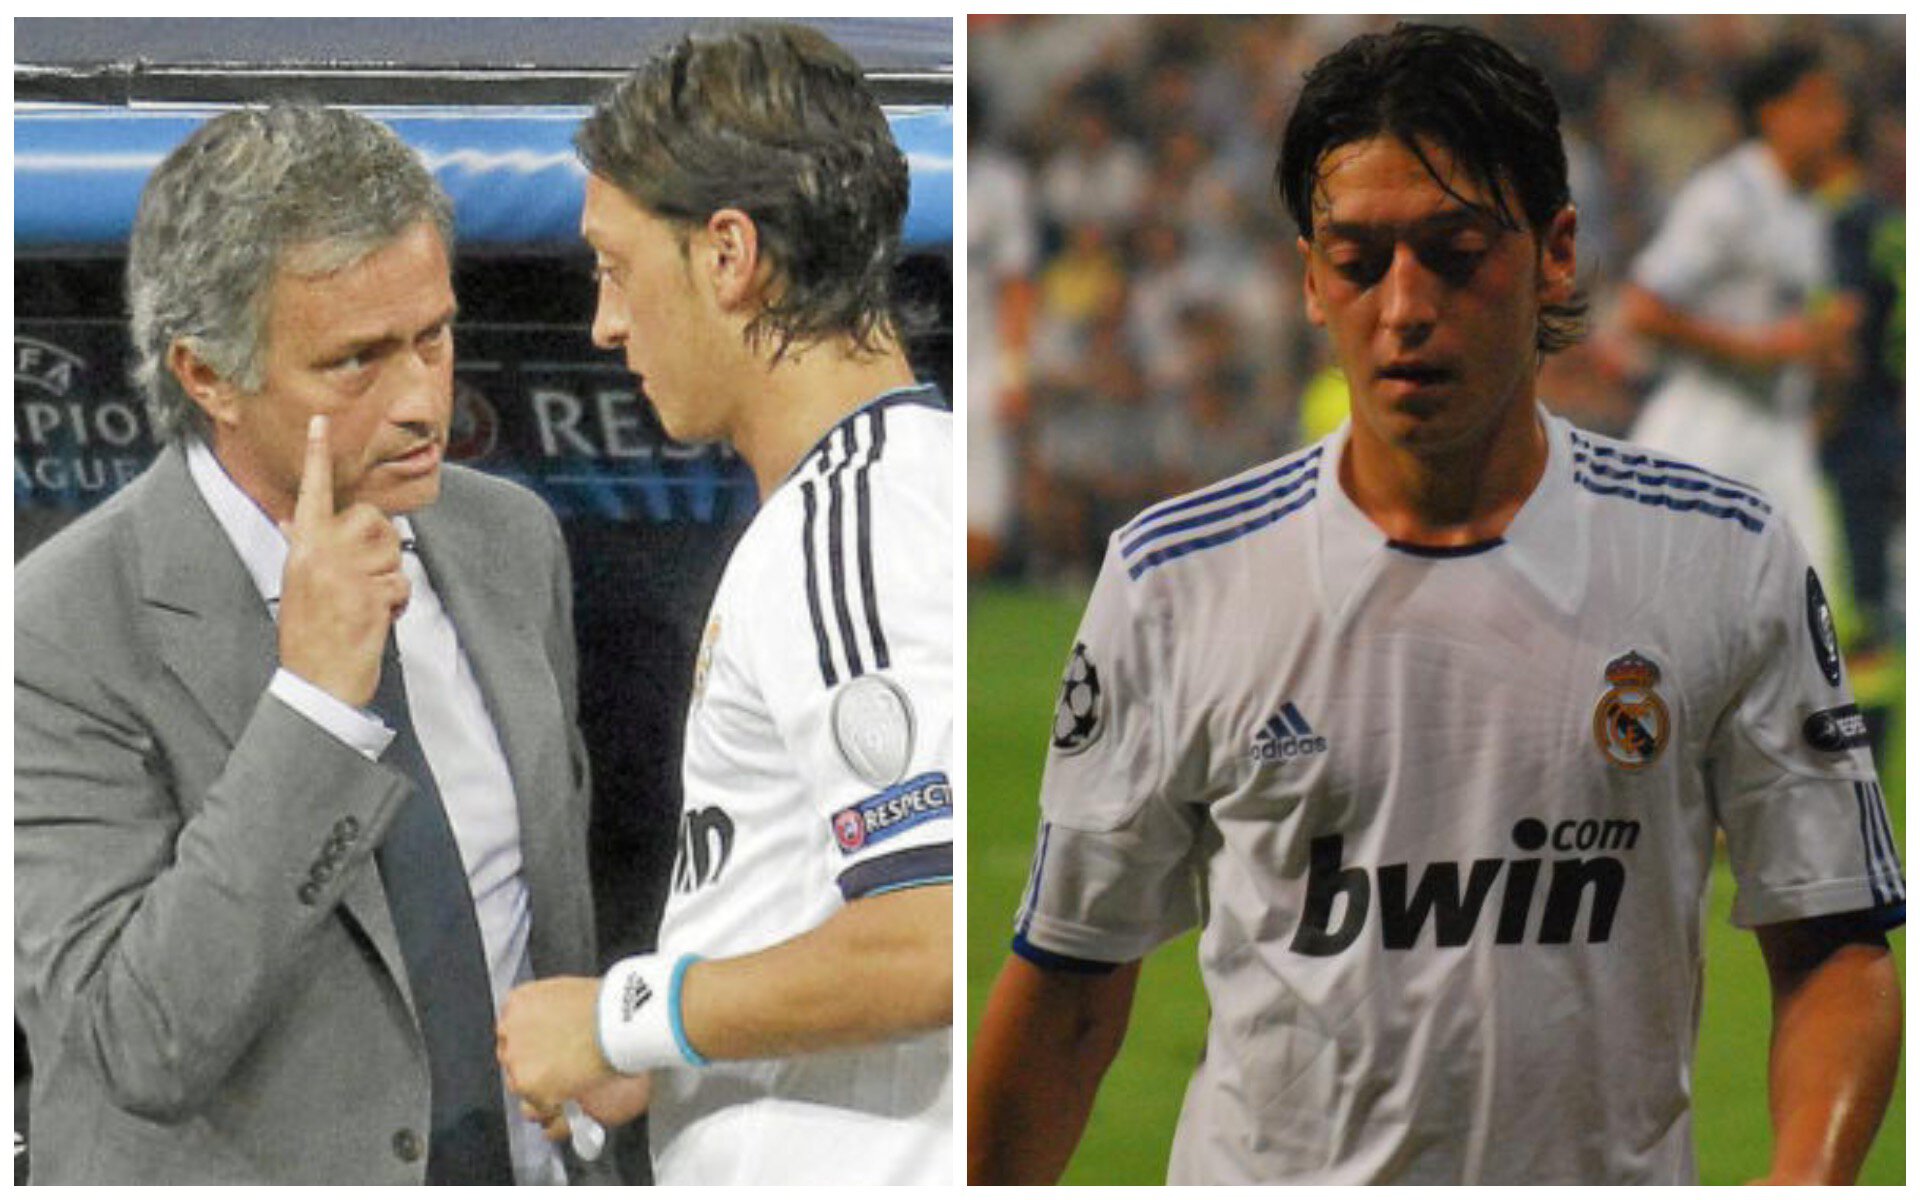 “Shko qaj, bebe, ne nuk kemi nevojë për ju”, Ozil tregoi historinë e Mourinhos duke i bërtitur para të gjithë ekipit për 10 minuta